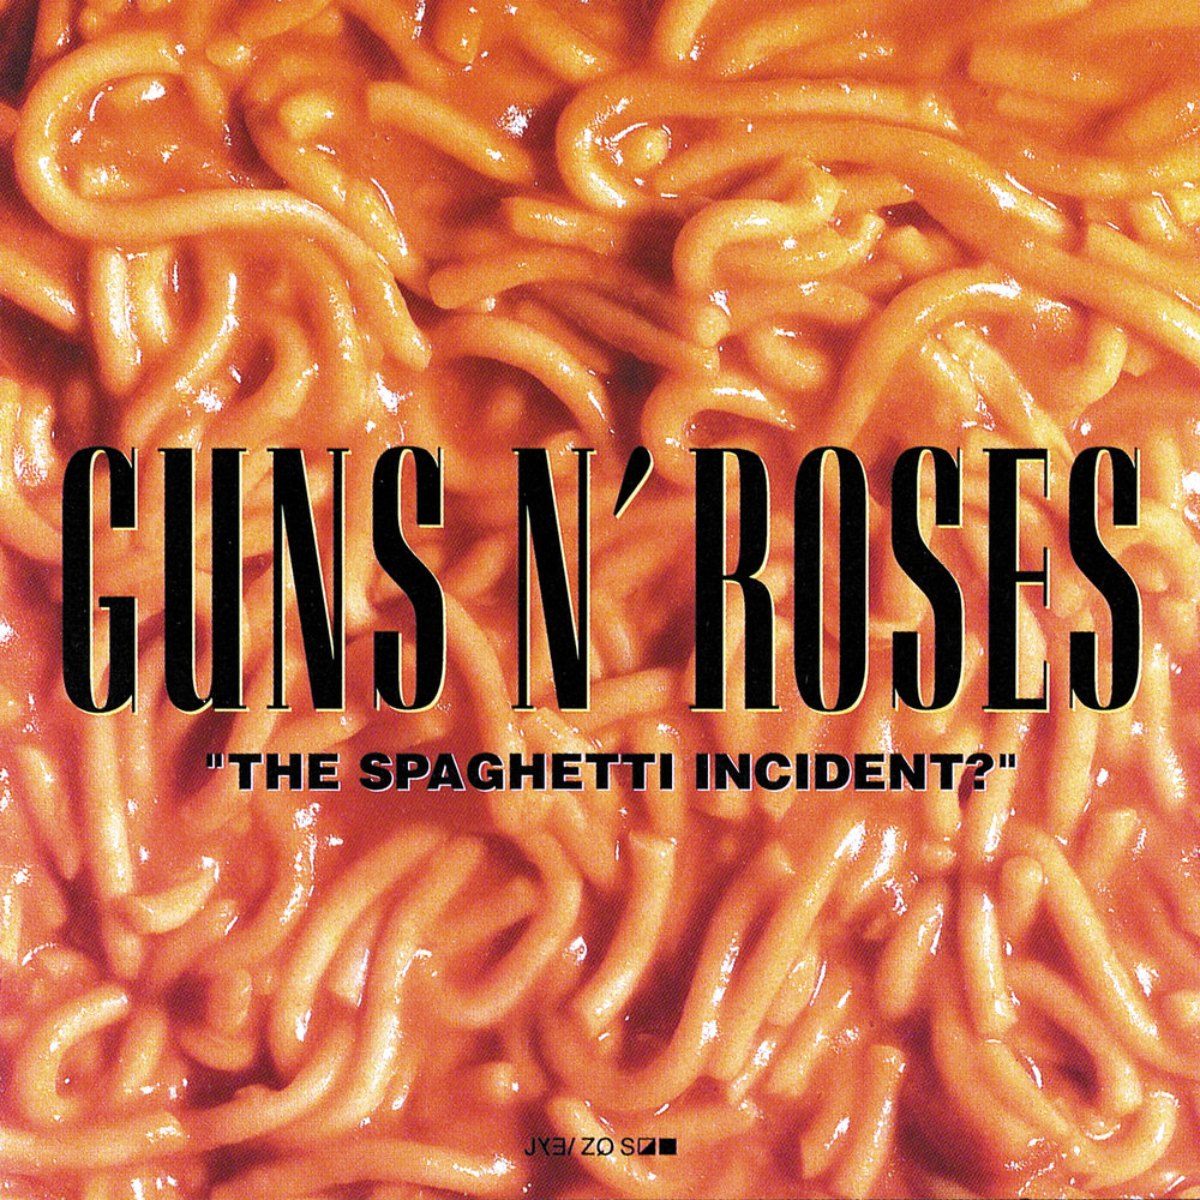 Portada del álbum "The Spaghetti Incident" de Guns N' Roses